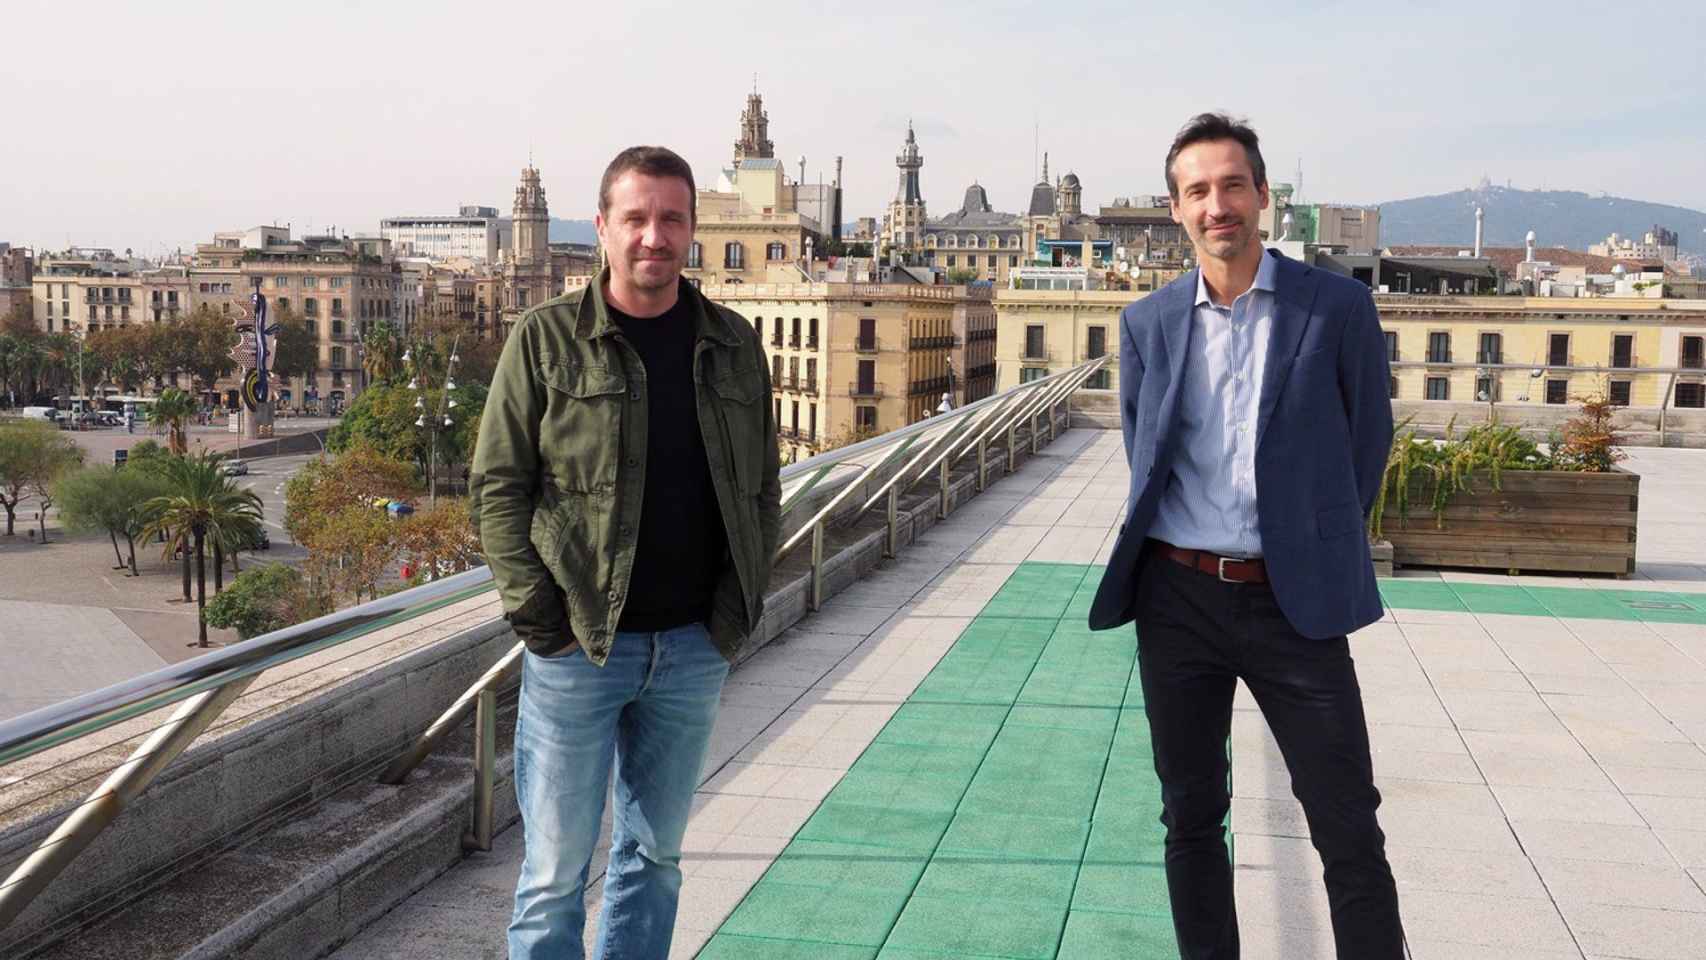 Miquel Martí, CEO de Barcelona Tech City, e Iker Ganuza, director de la categoría de Alimentación de PepsiCo en el Suroeste de Europa